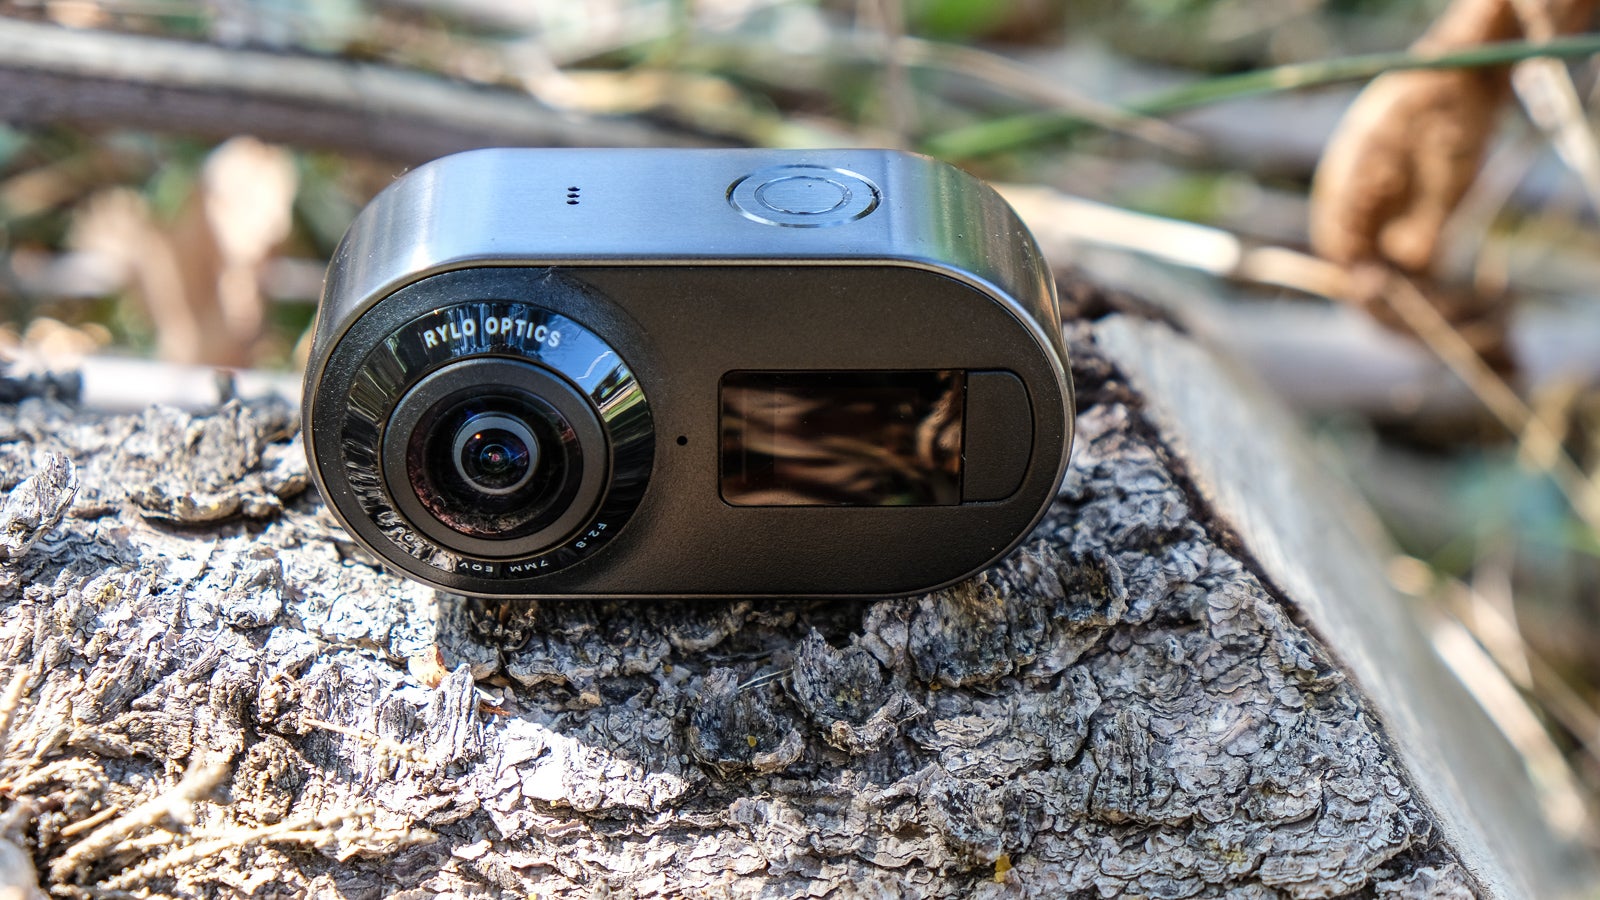 Rylo 360 Camera Review